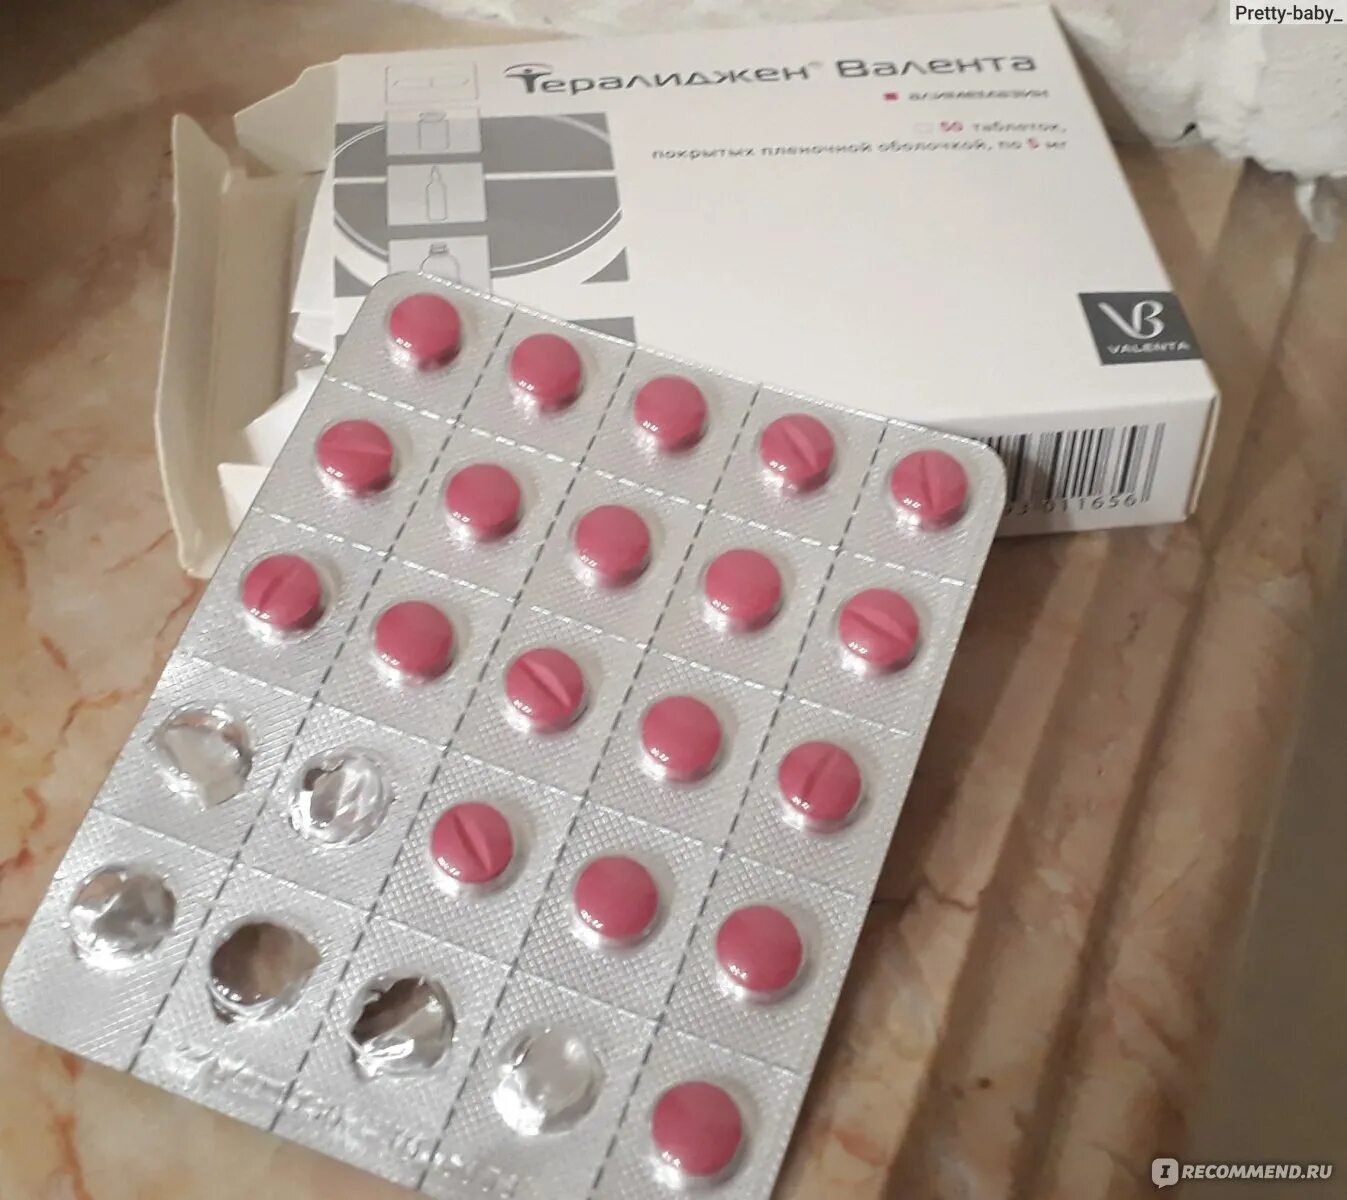 Нейролептик розовые таблетки. Таблетки розового цвета нейролептик. Розовые таблетки от психических расстройств. Этаперазин таблетки.